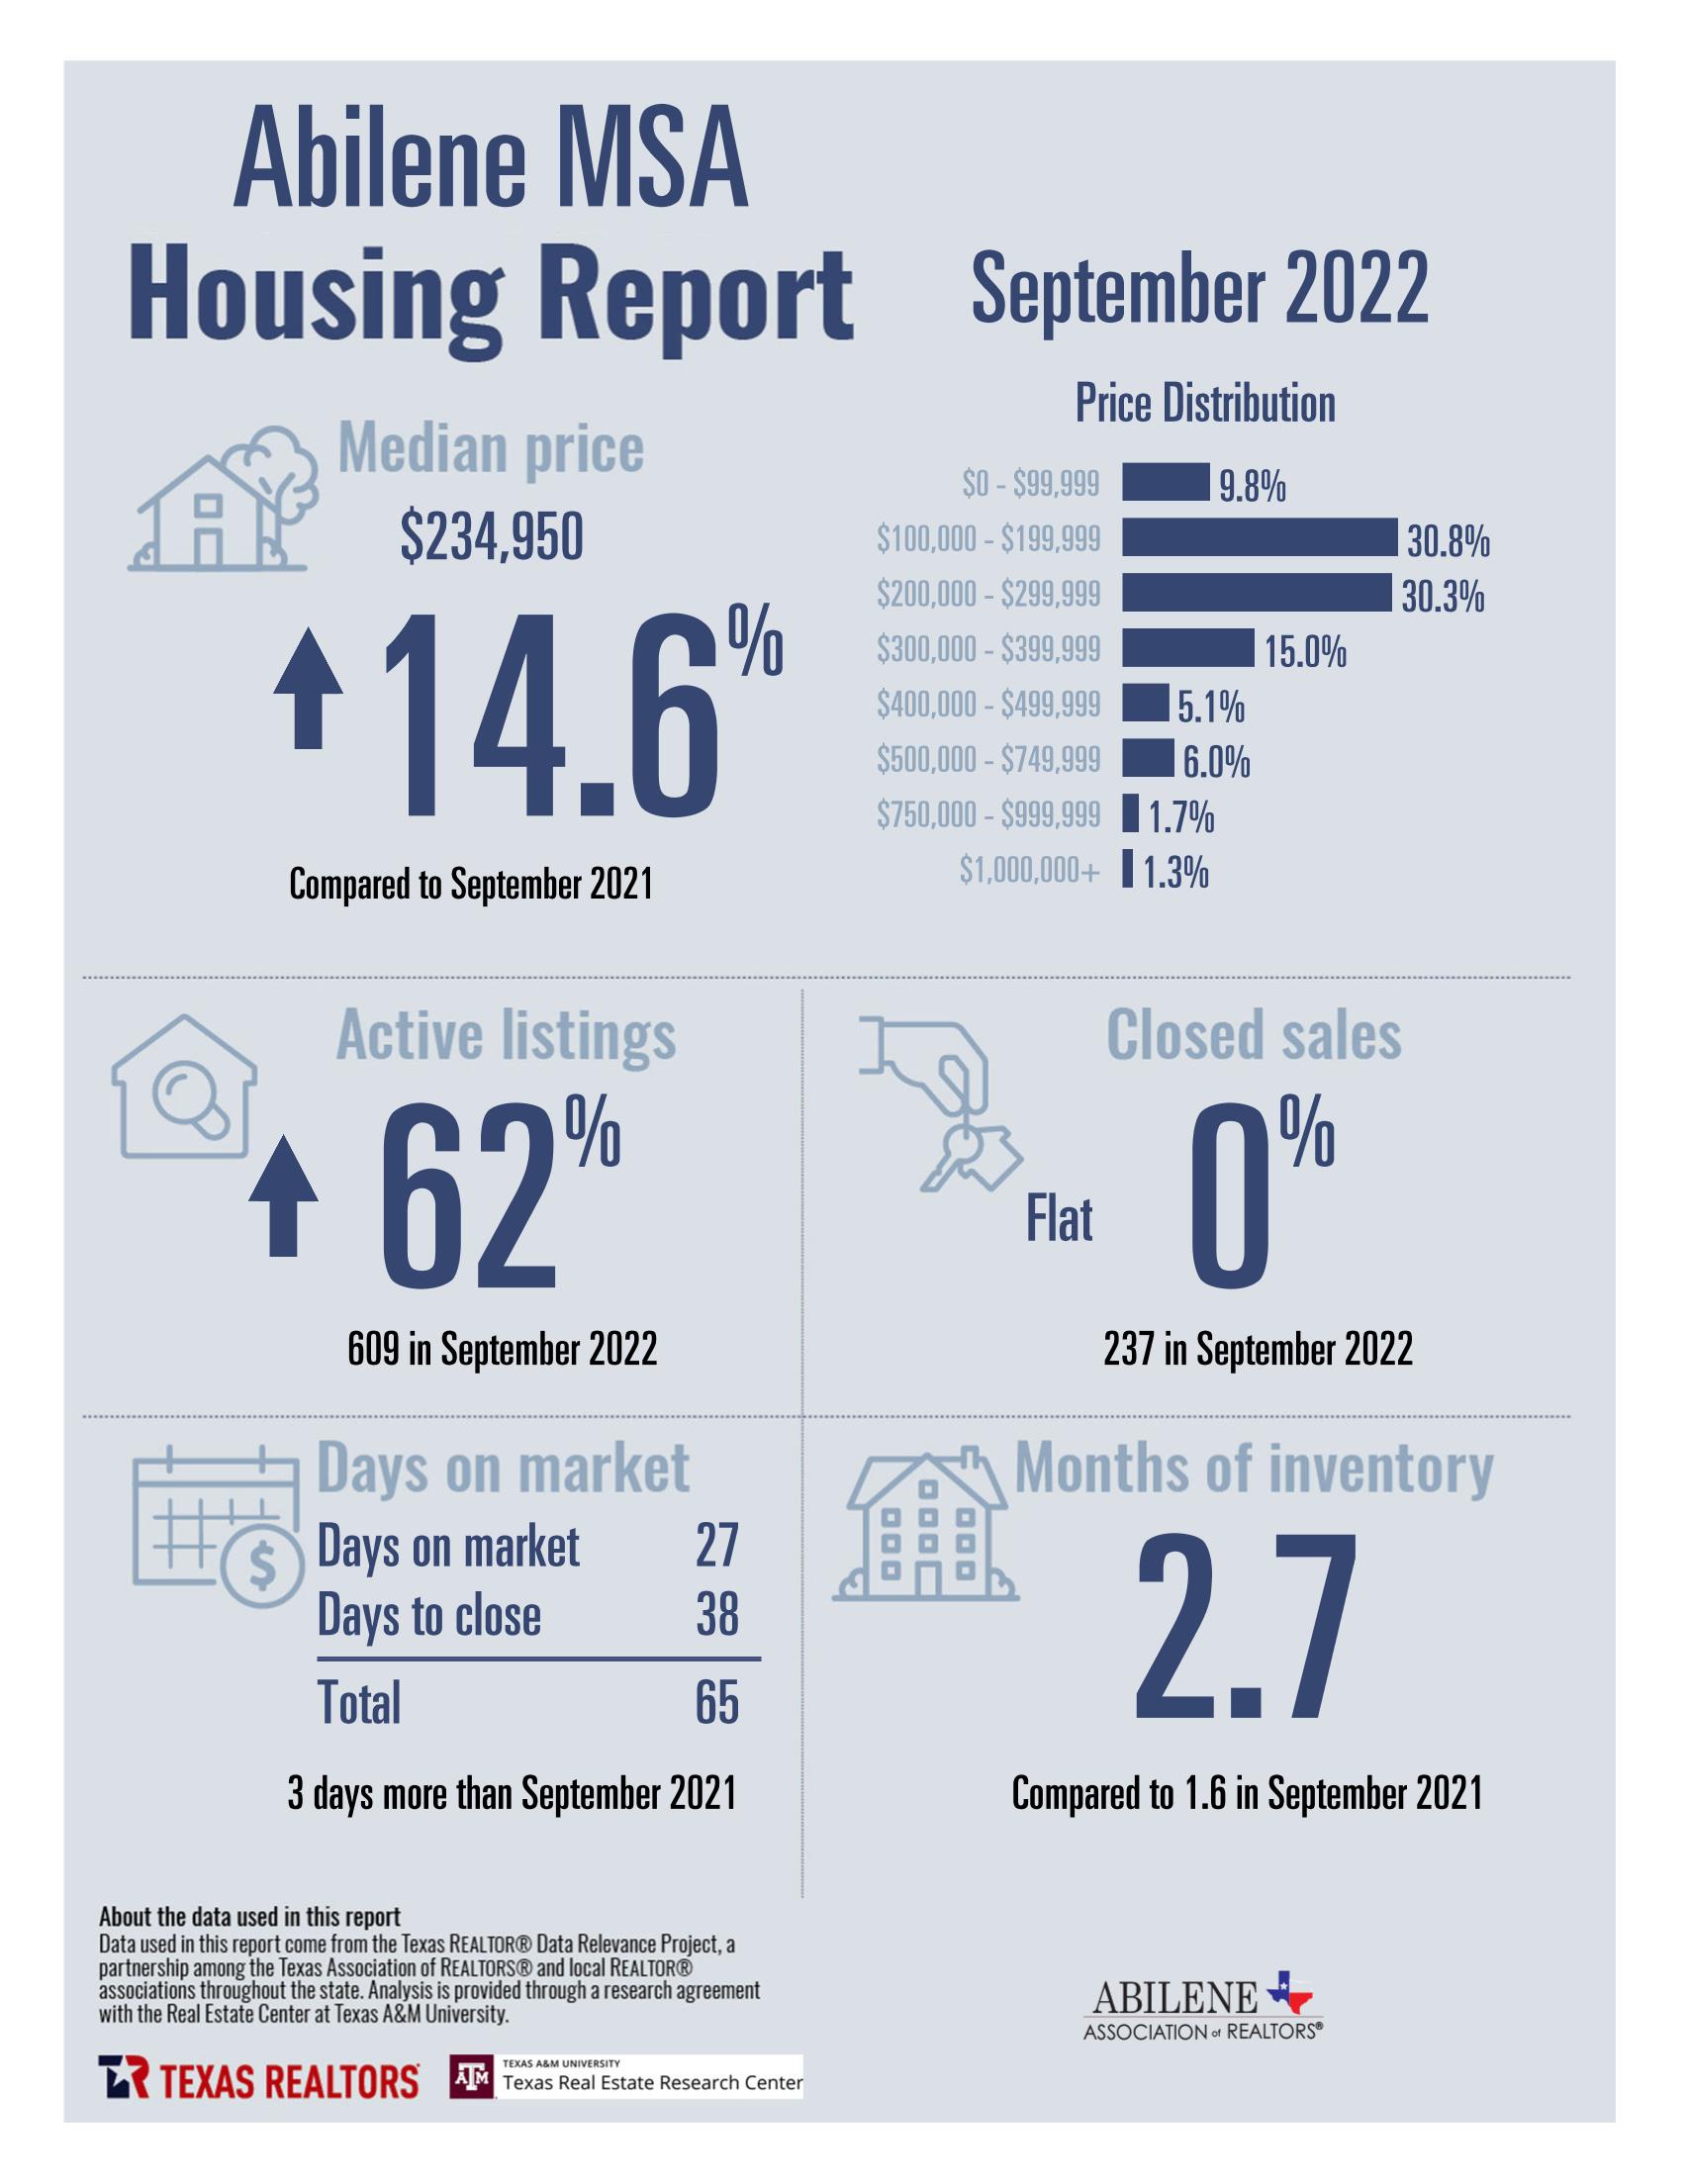 Housing market data for September 2022 in Abilene, TX